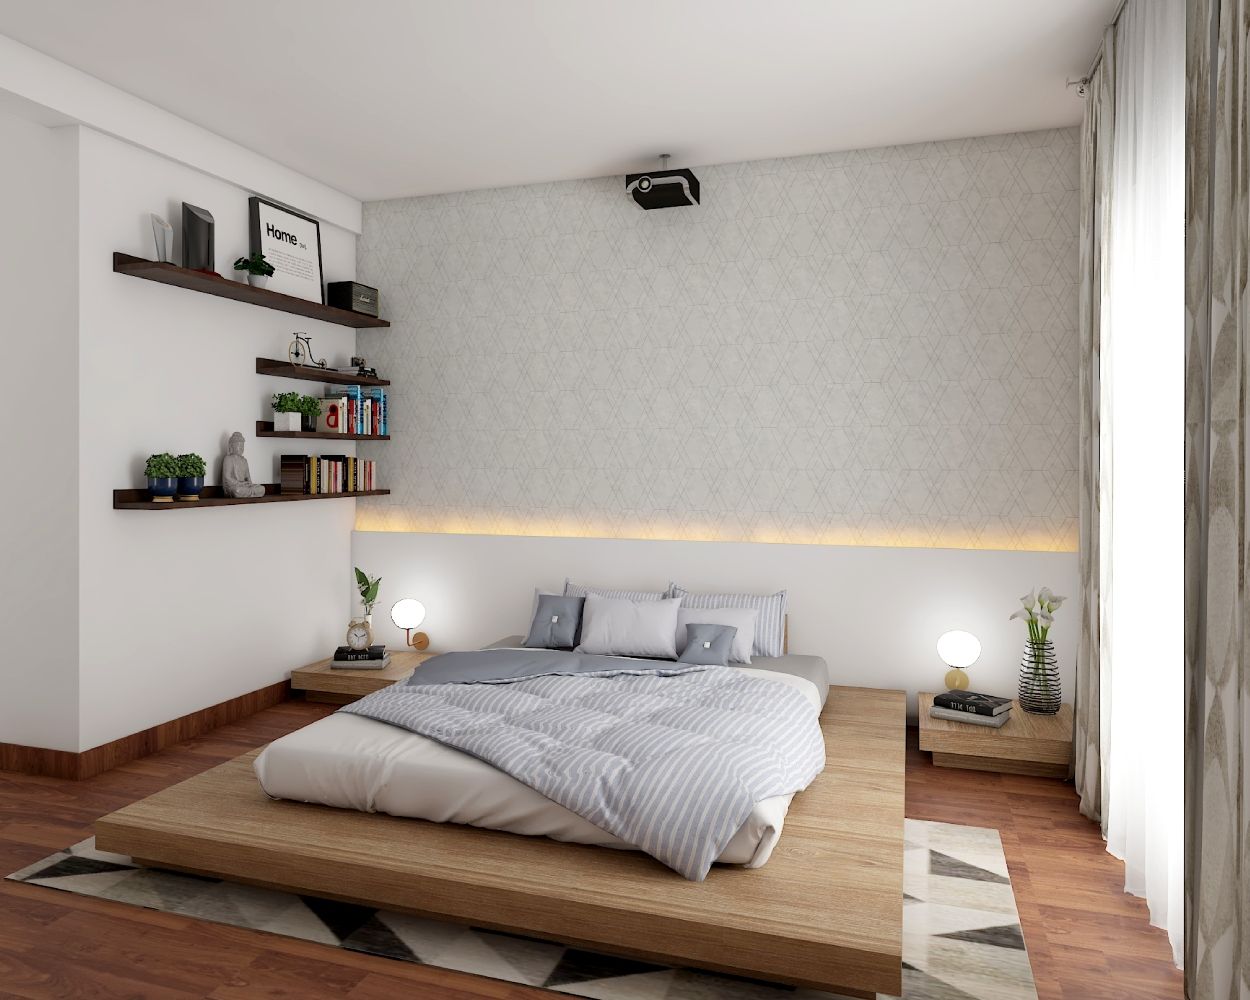 Scandinavian Beige Bedroom Wallpaper Design With Geometric Patterns